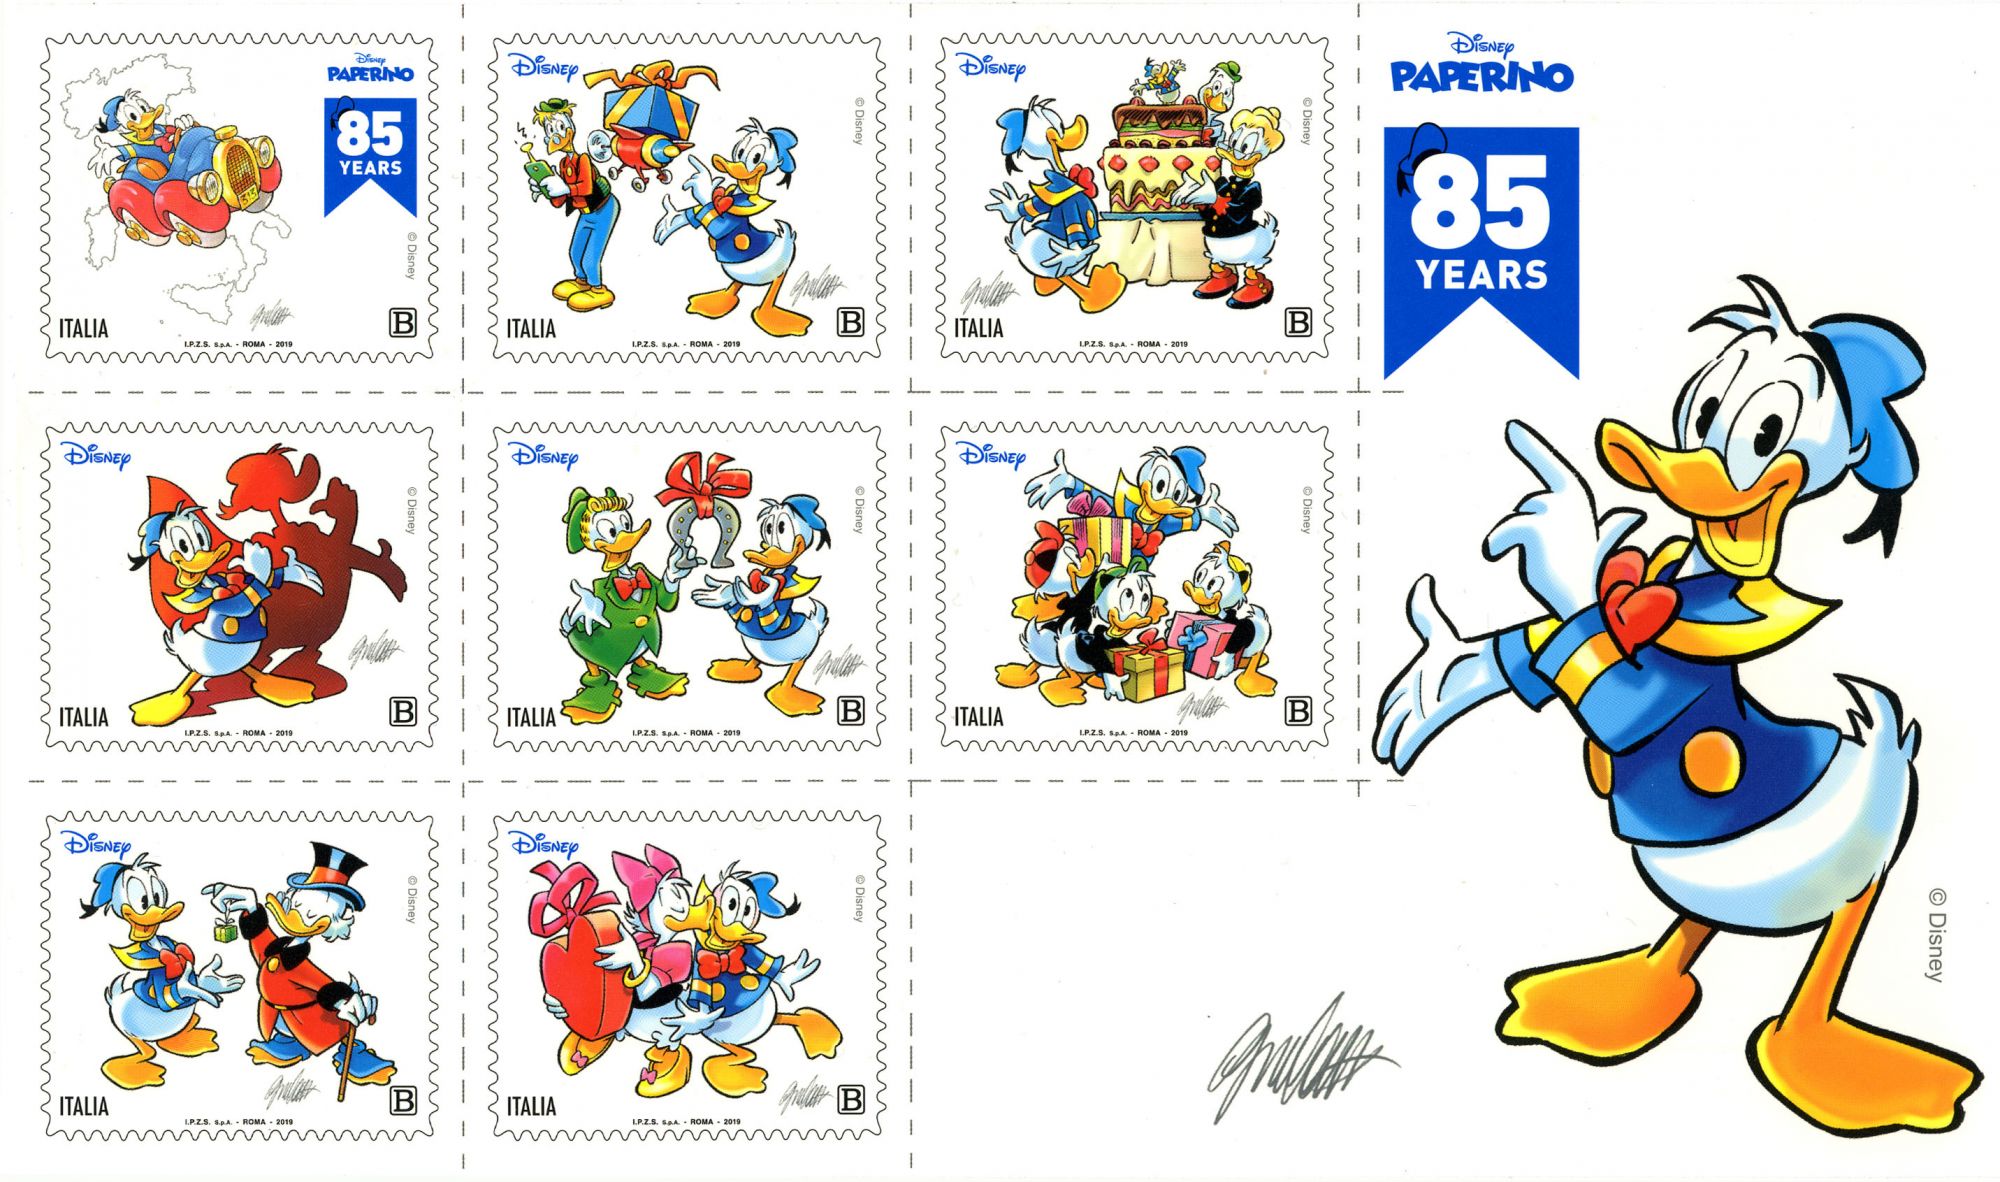 A Lucca Comics il francobollo dedicato a Paperino